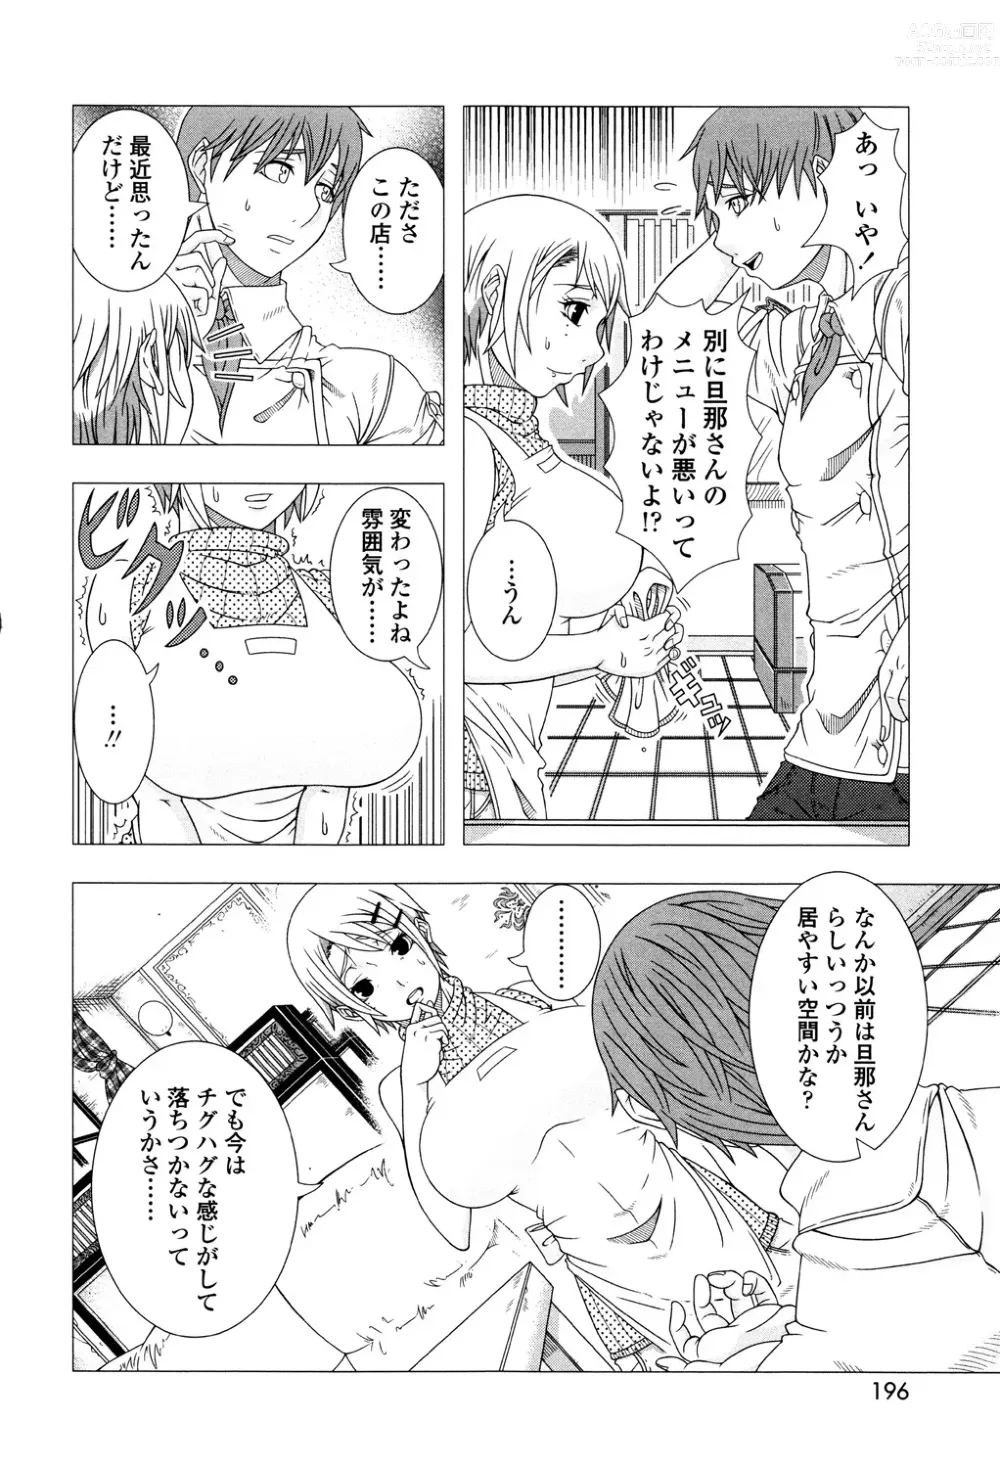 Page 194 of manga Hitozuma Life - Married Woman Life